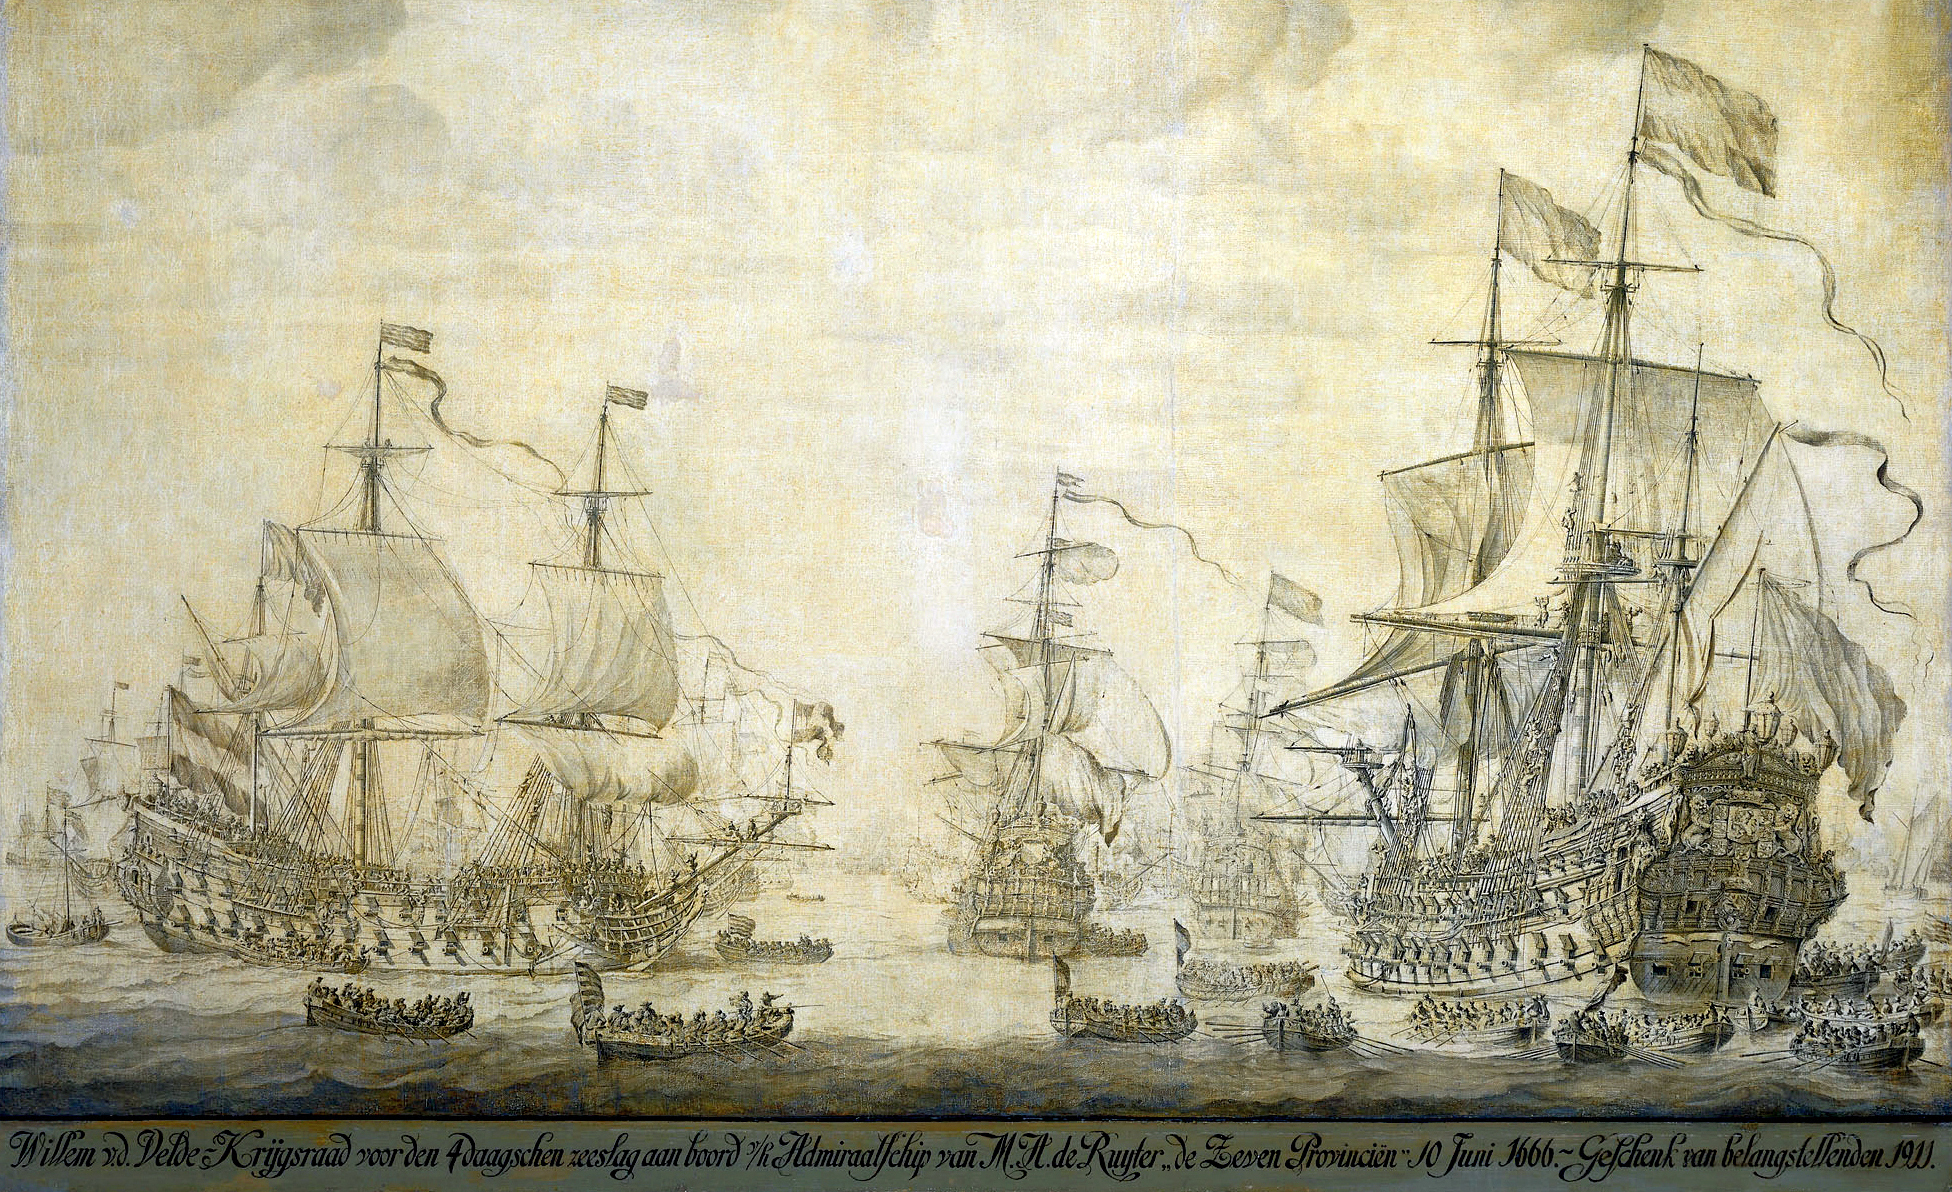 Az ütközet előtti napon megtartott haditanácsra érkező holland parancsnokok csónakjai a De Zeven Provincien felé tartanak.